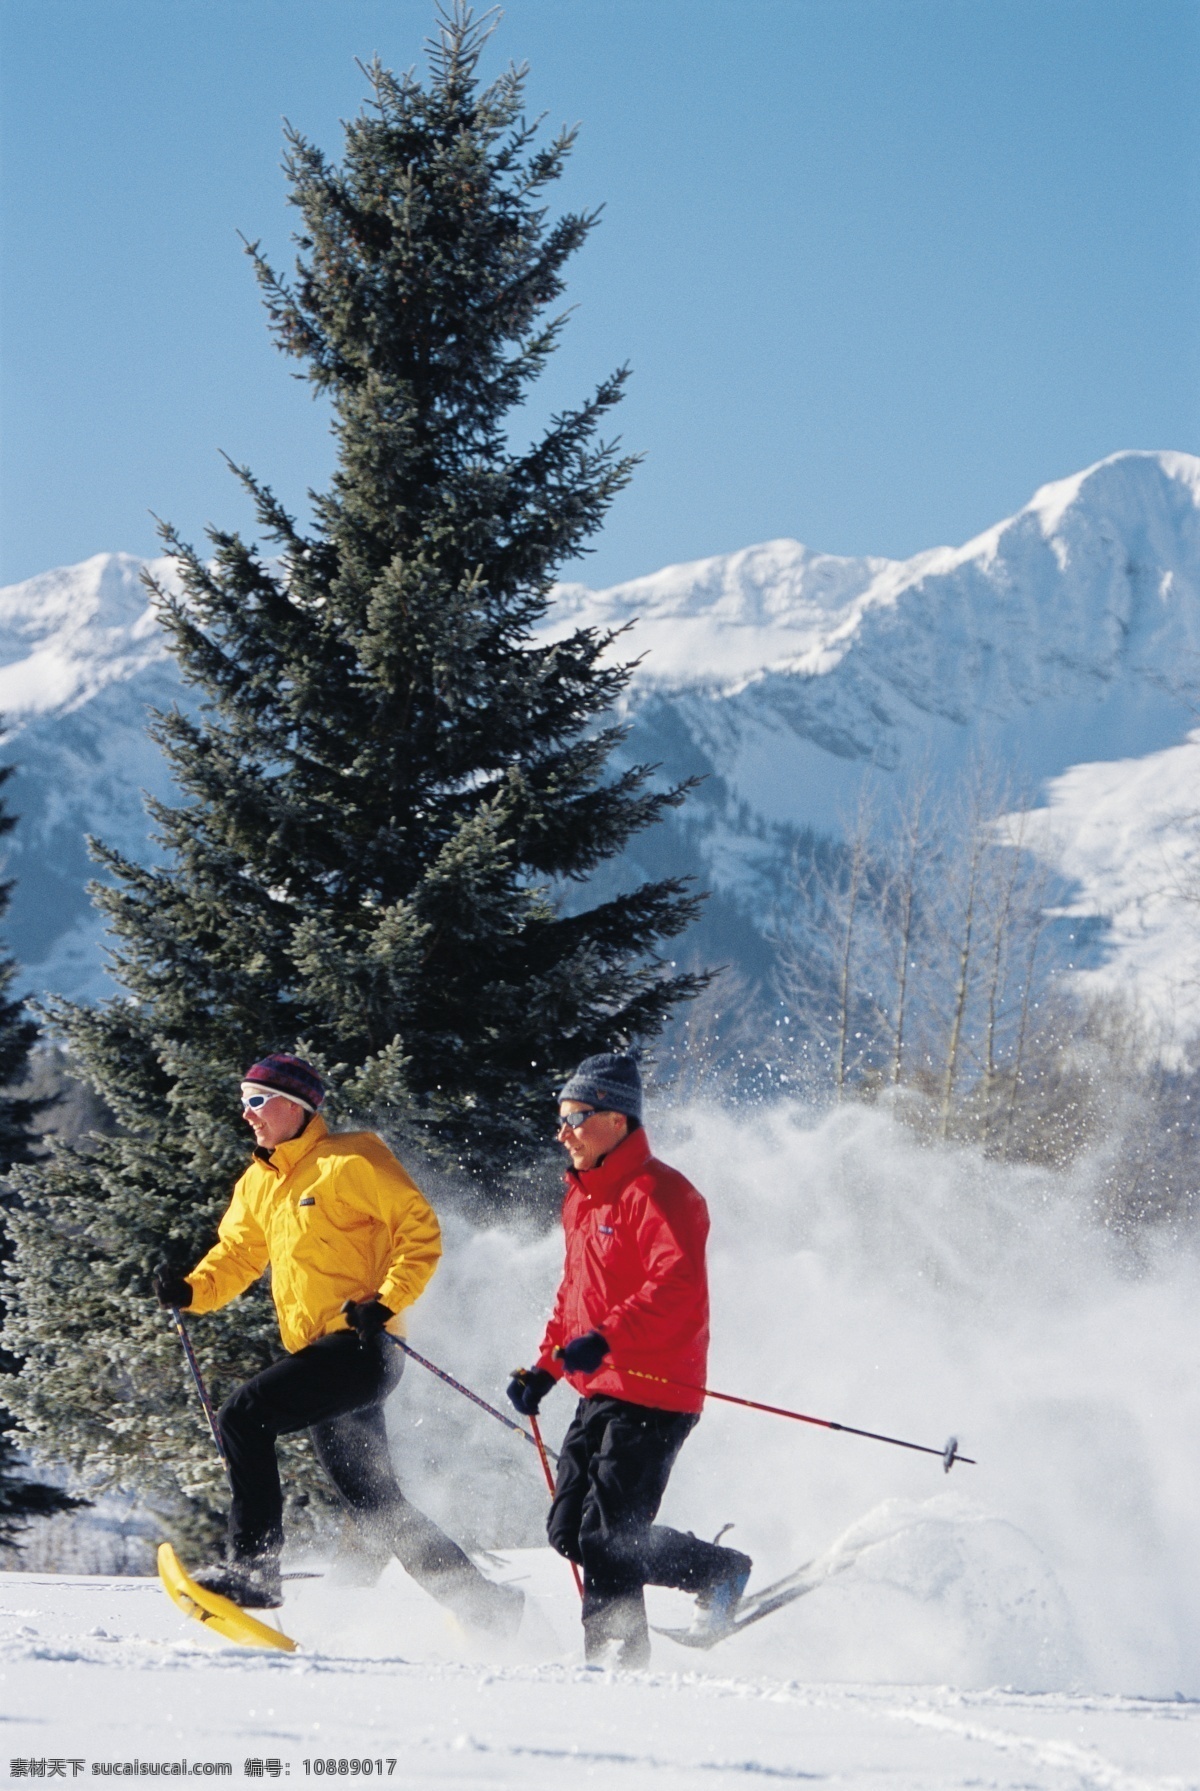 雪地 上 滑雪 运动员 高清 冬天 雪地运动 划雪运动 极限运动 体育项目 运动图片 生活百科 风景 雪景 雪山风光 摄影图片 高清图片 体育运动 黑色